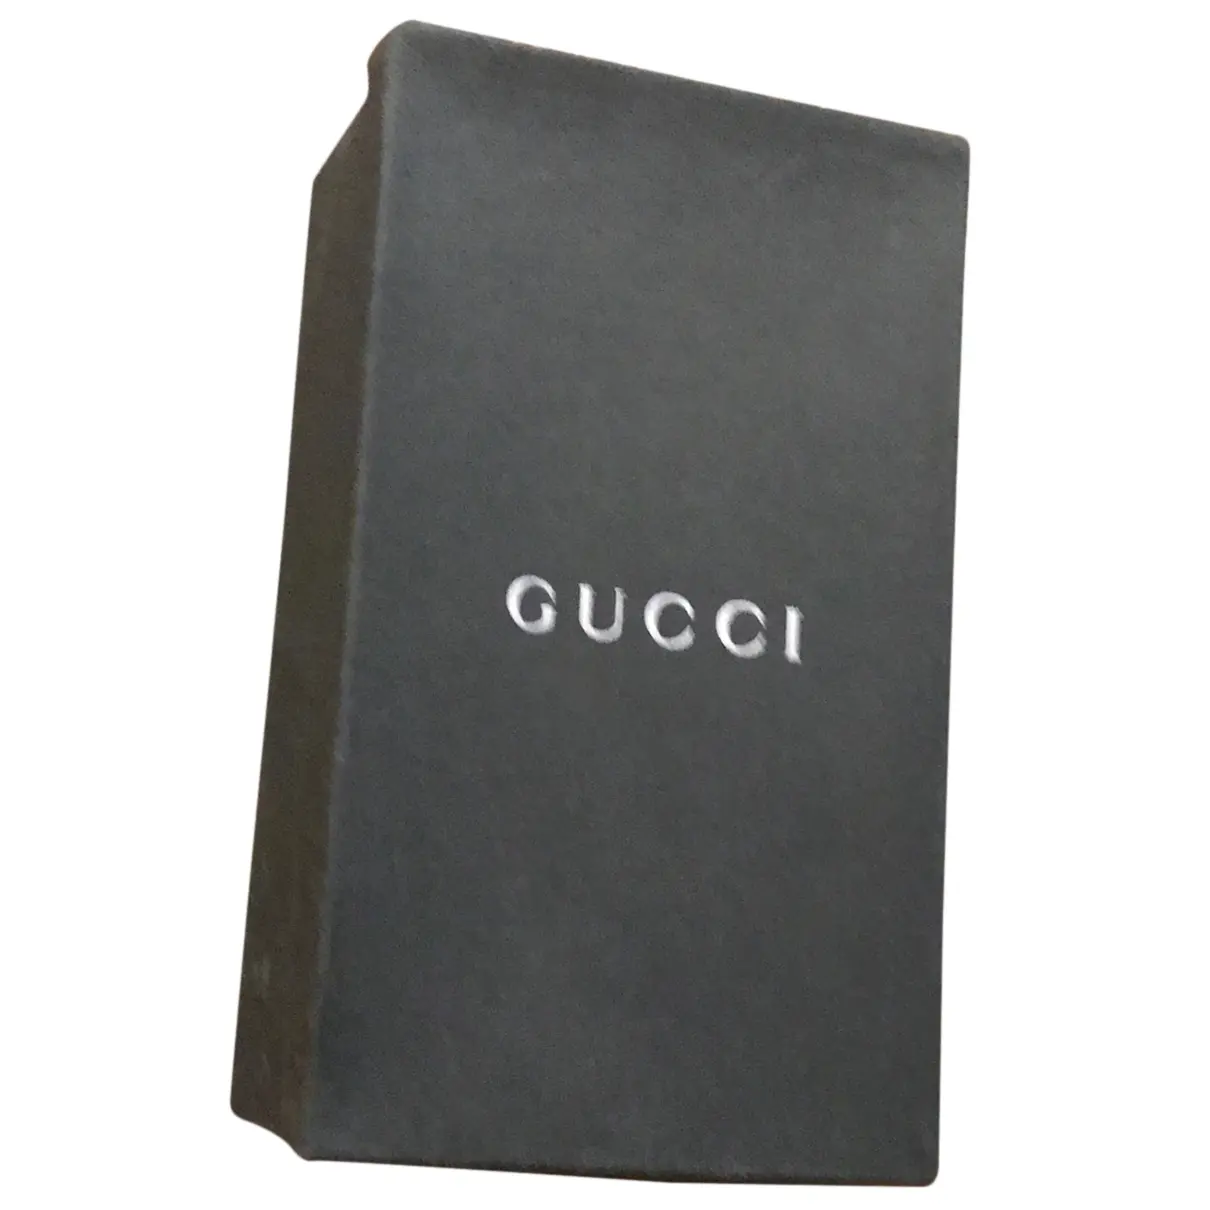 Buy Gucci Leather sandal online - Vintage